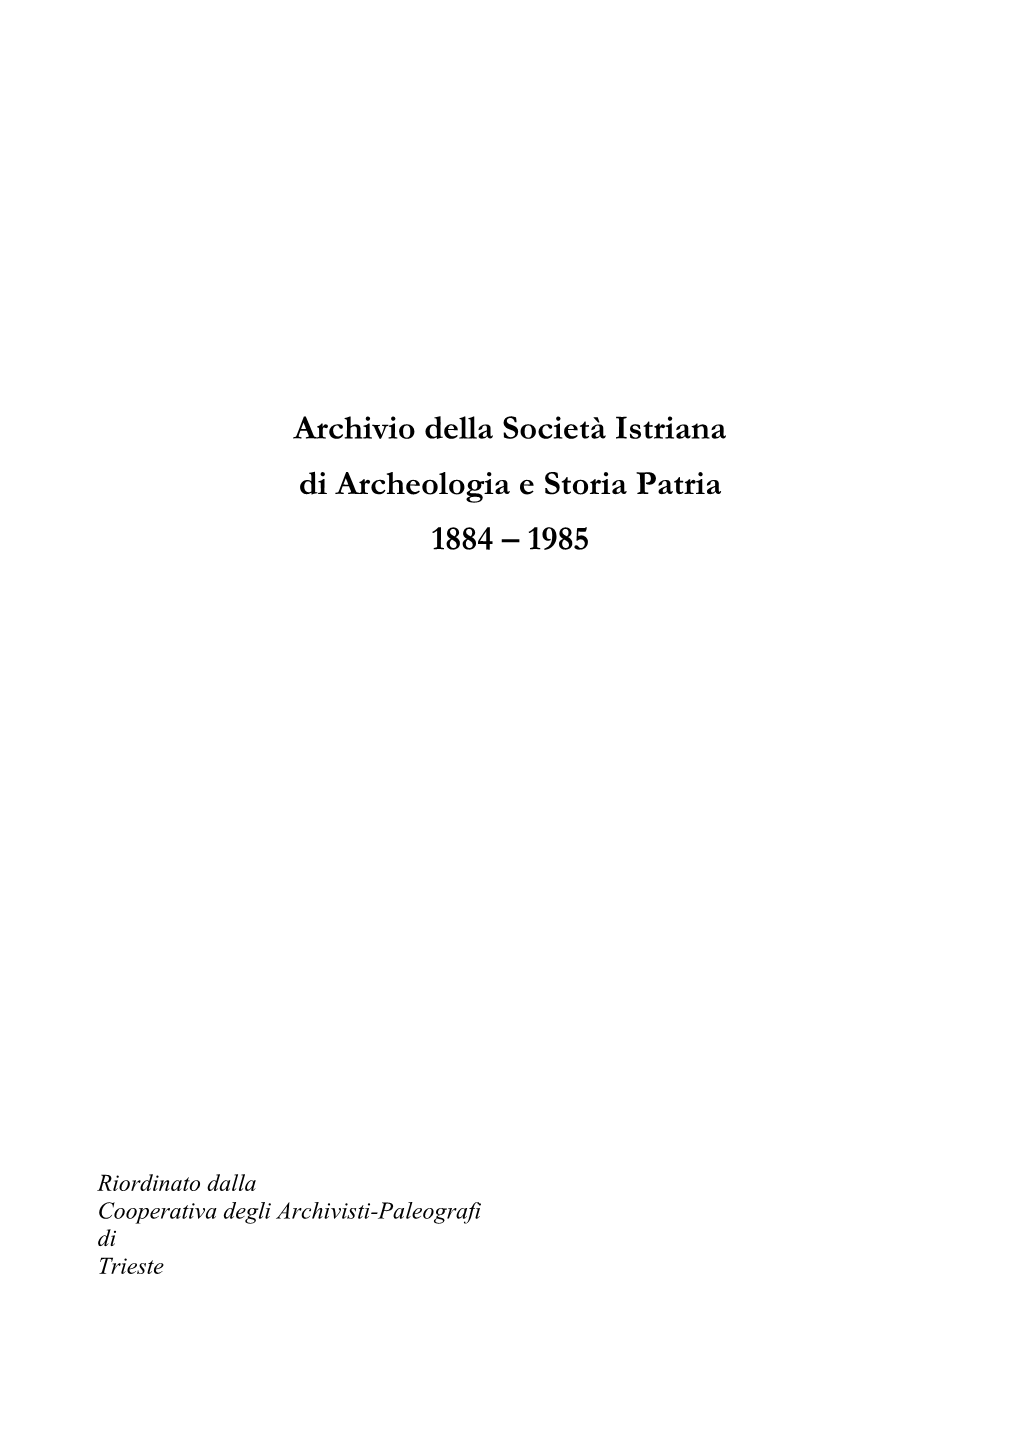 Archivio Della Società Istriana Di Archeologia E Storia Patria 1884 – 1985